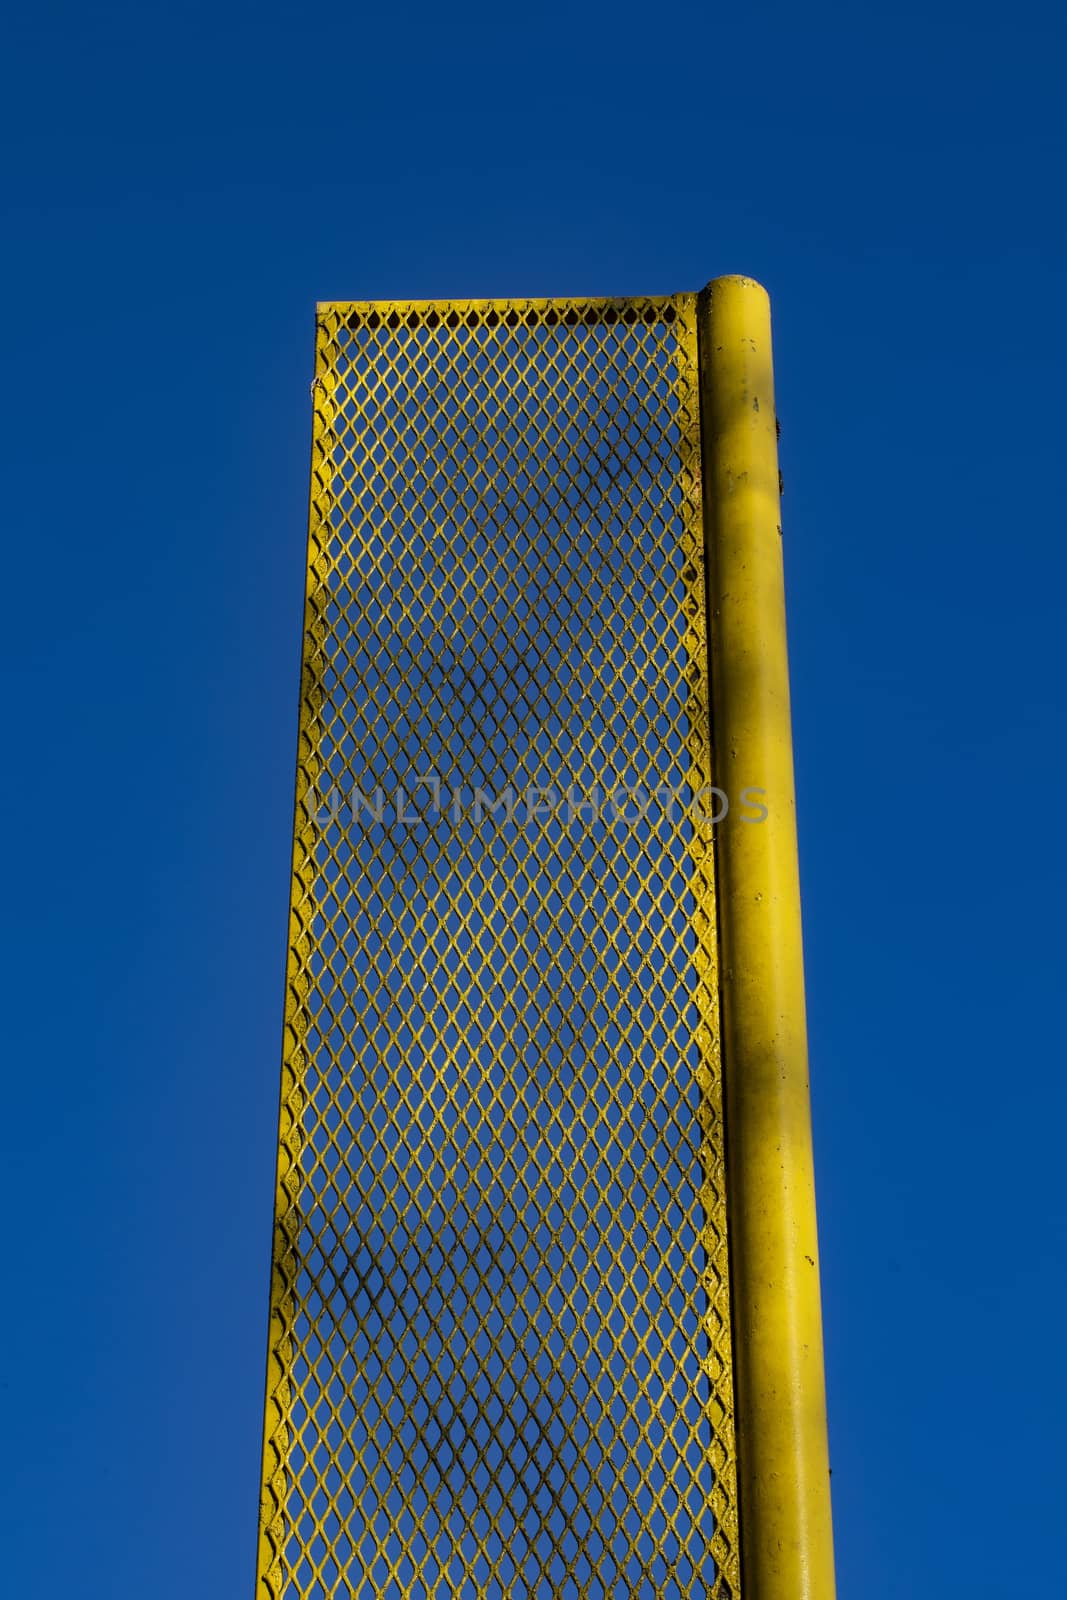 Foul Pole Against Blue Sky by CharlieFloyd